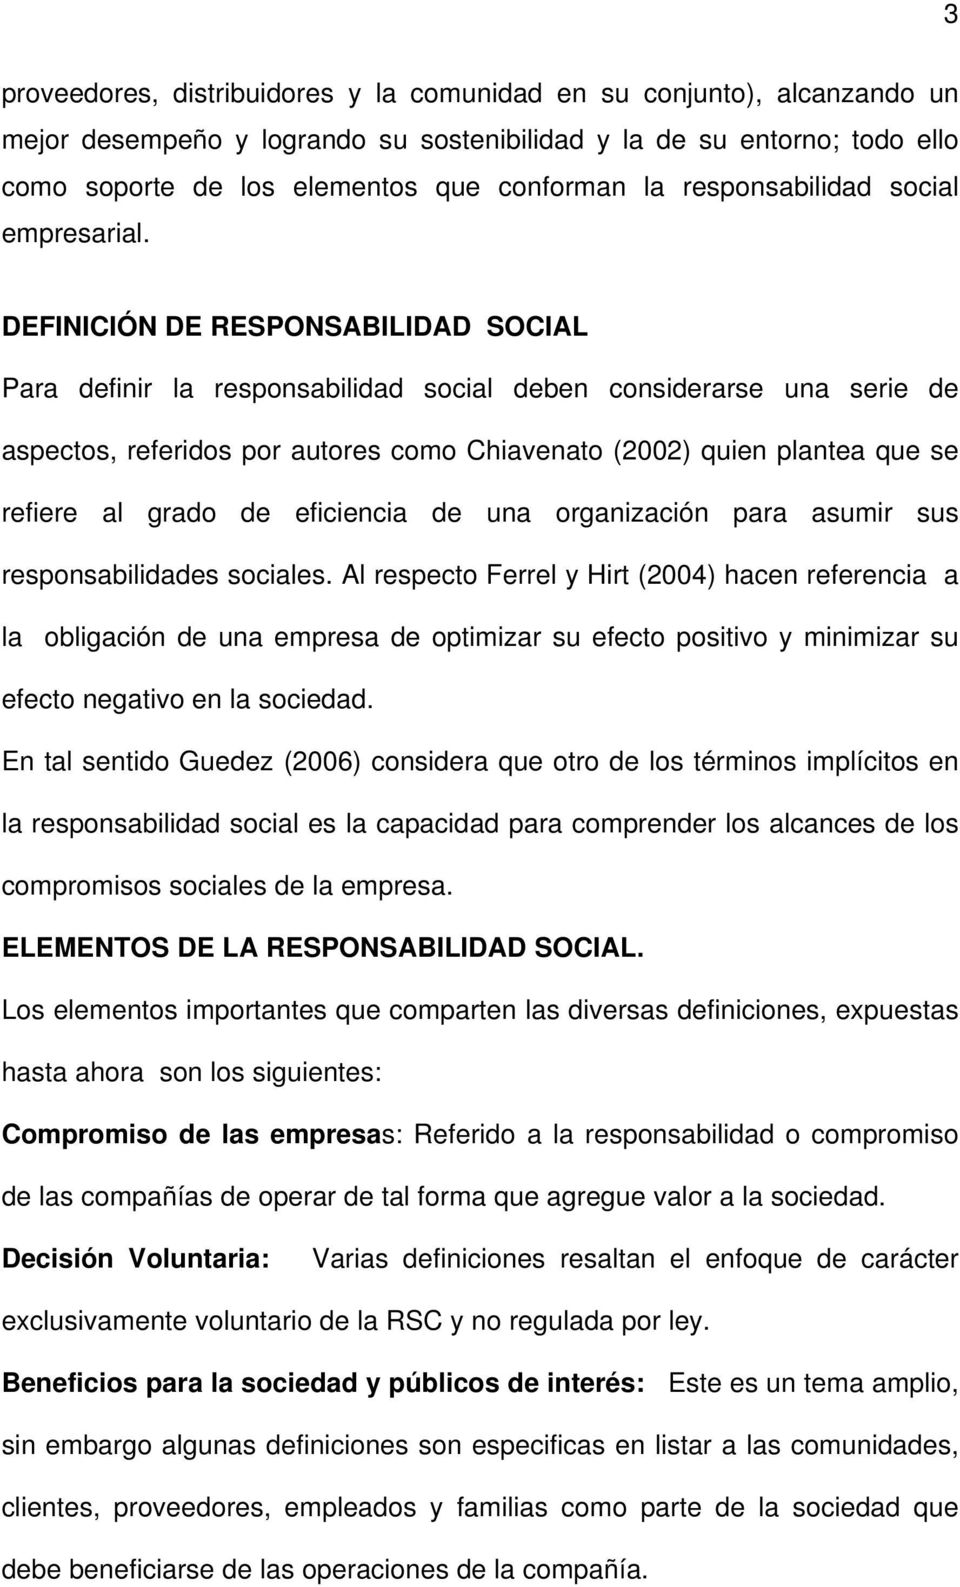 DEFINICIÓN DE RESPONSABILIDAD SOCIAL Para definir la responsabilidad social deben considerarse una serie de aspectos, referidos por autores como Chiavenato (2002) quien plantea que se refiere al